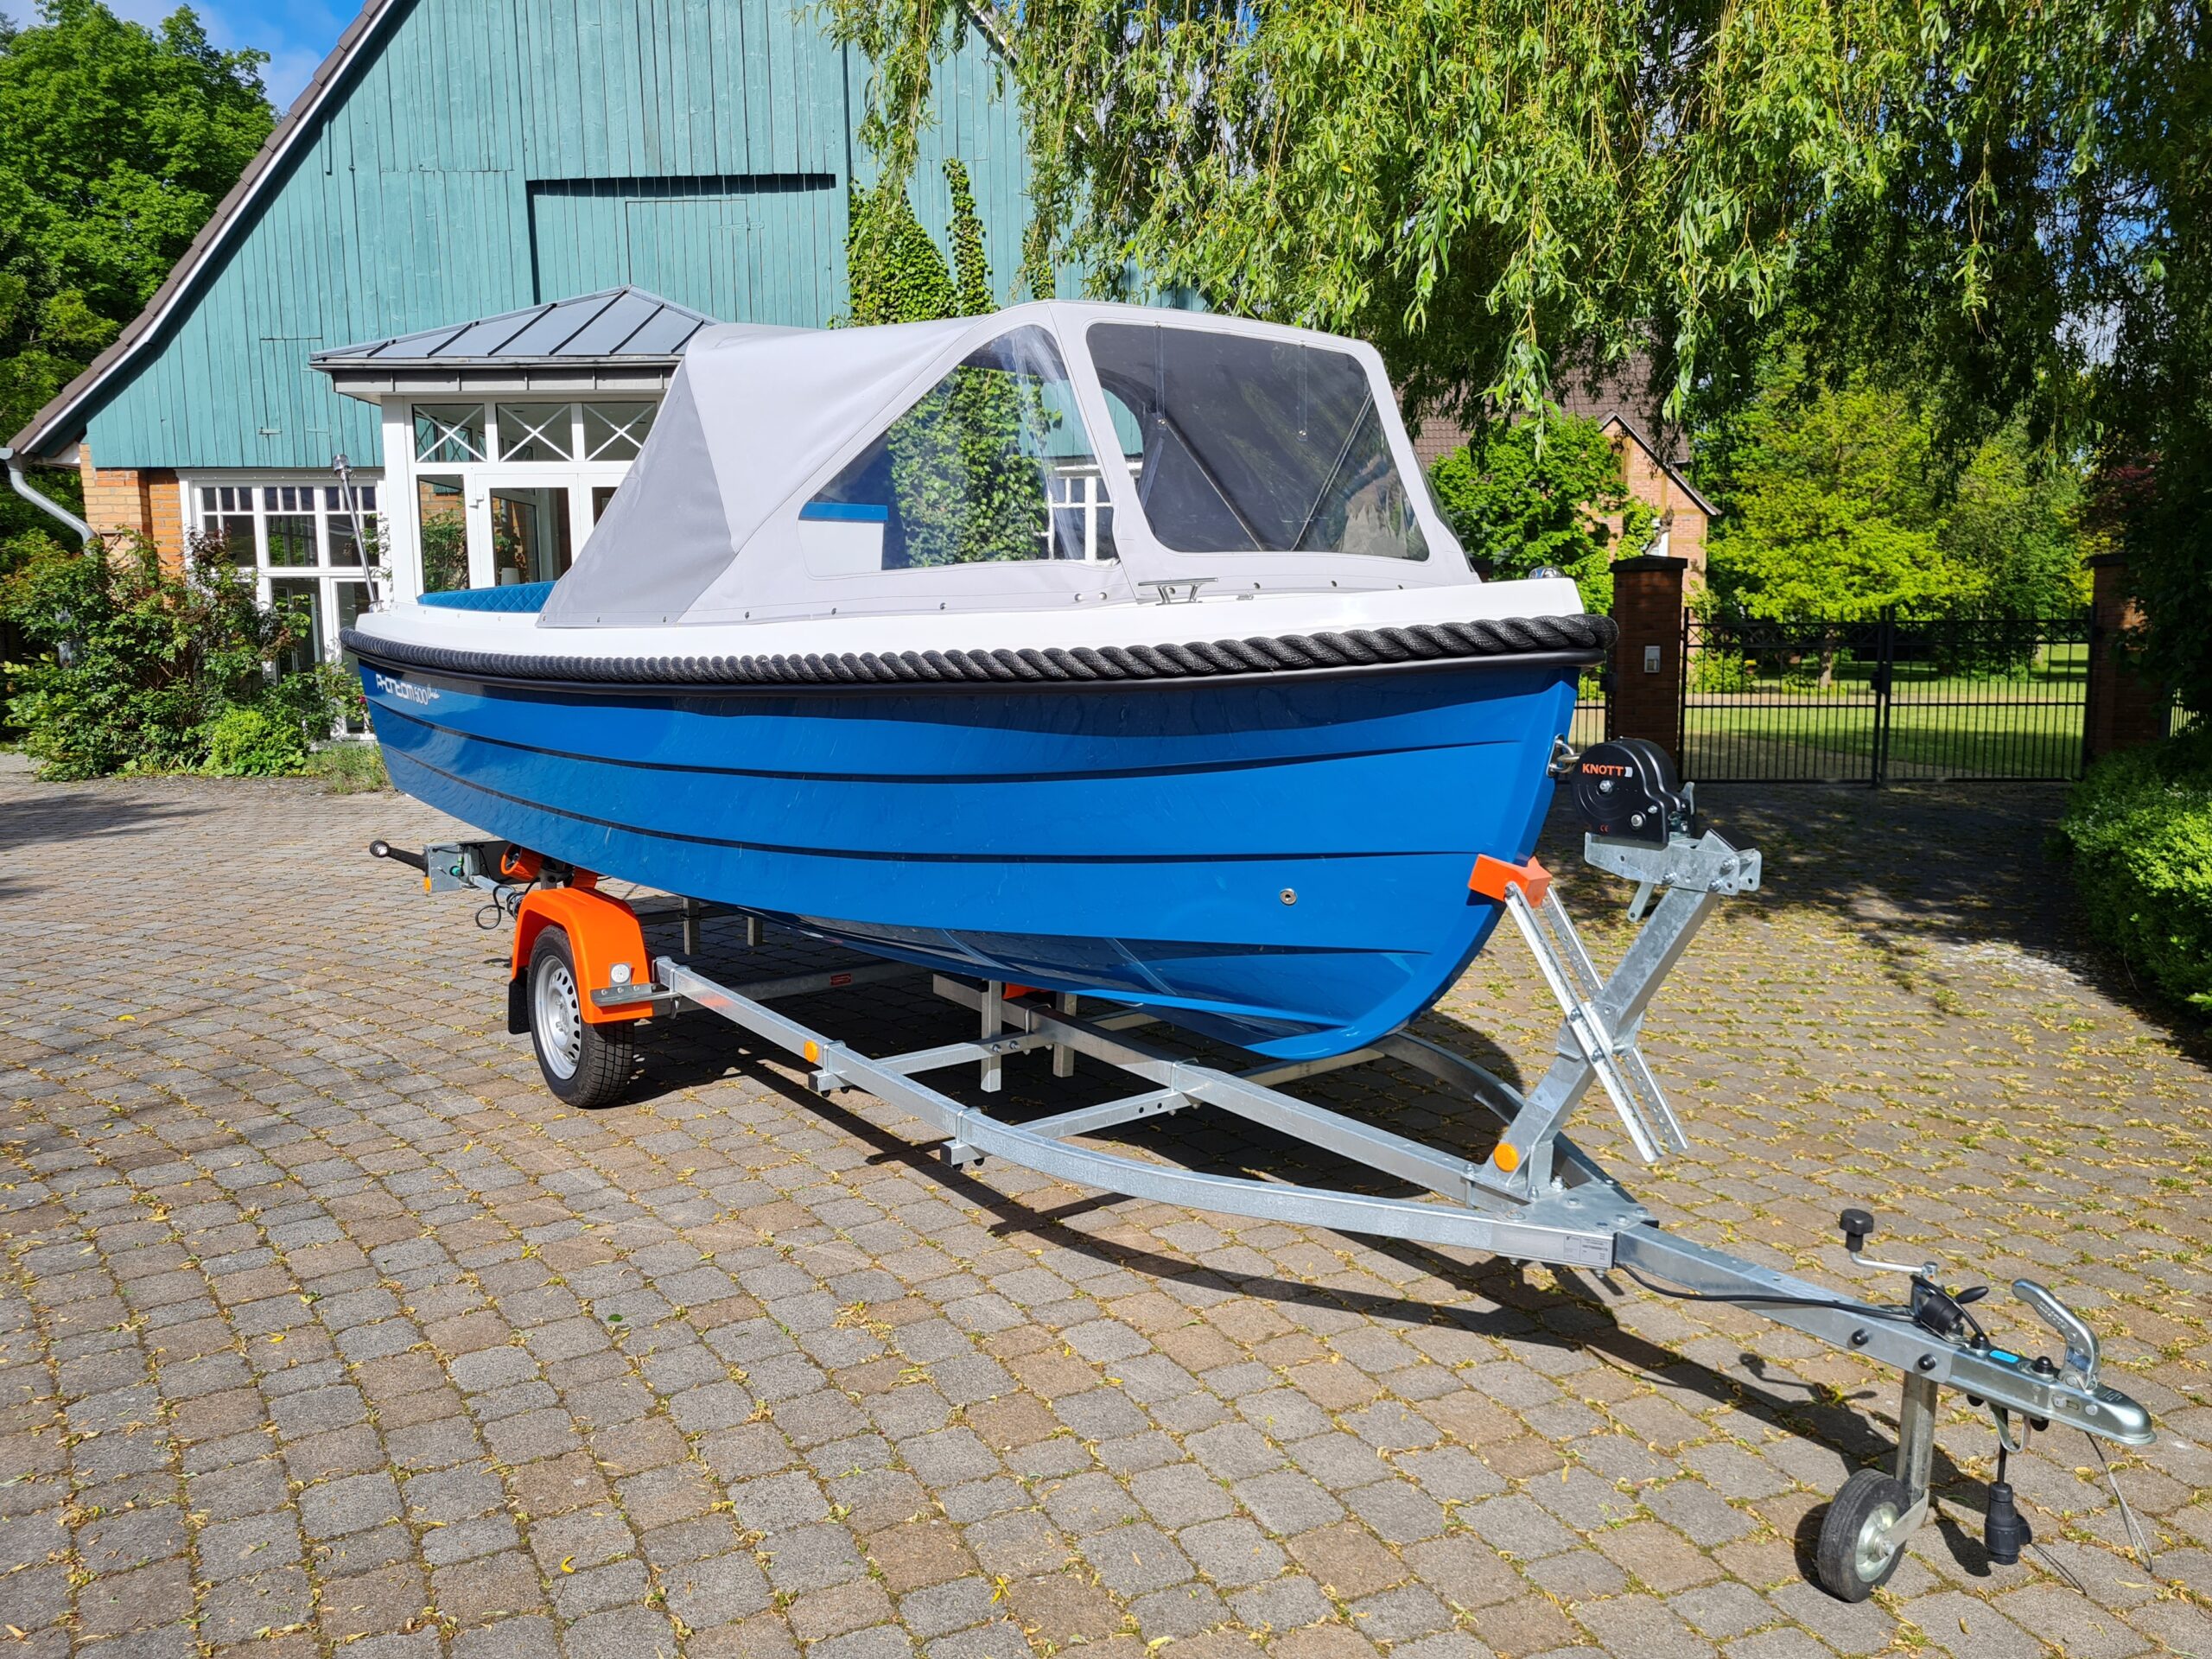 Phantom 500 Classic Motorboot in der Sonderlackierung Azurblau mit grauer Sprayhood. Motorboot mit Elektroantrieb. Frontansicht